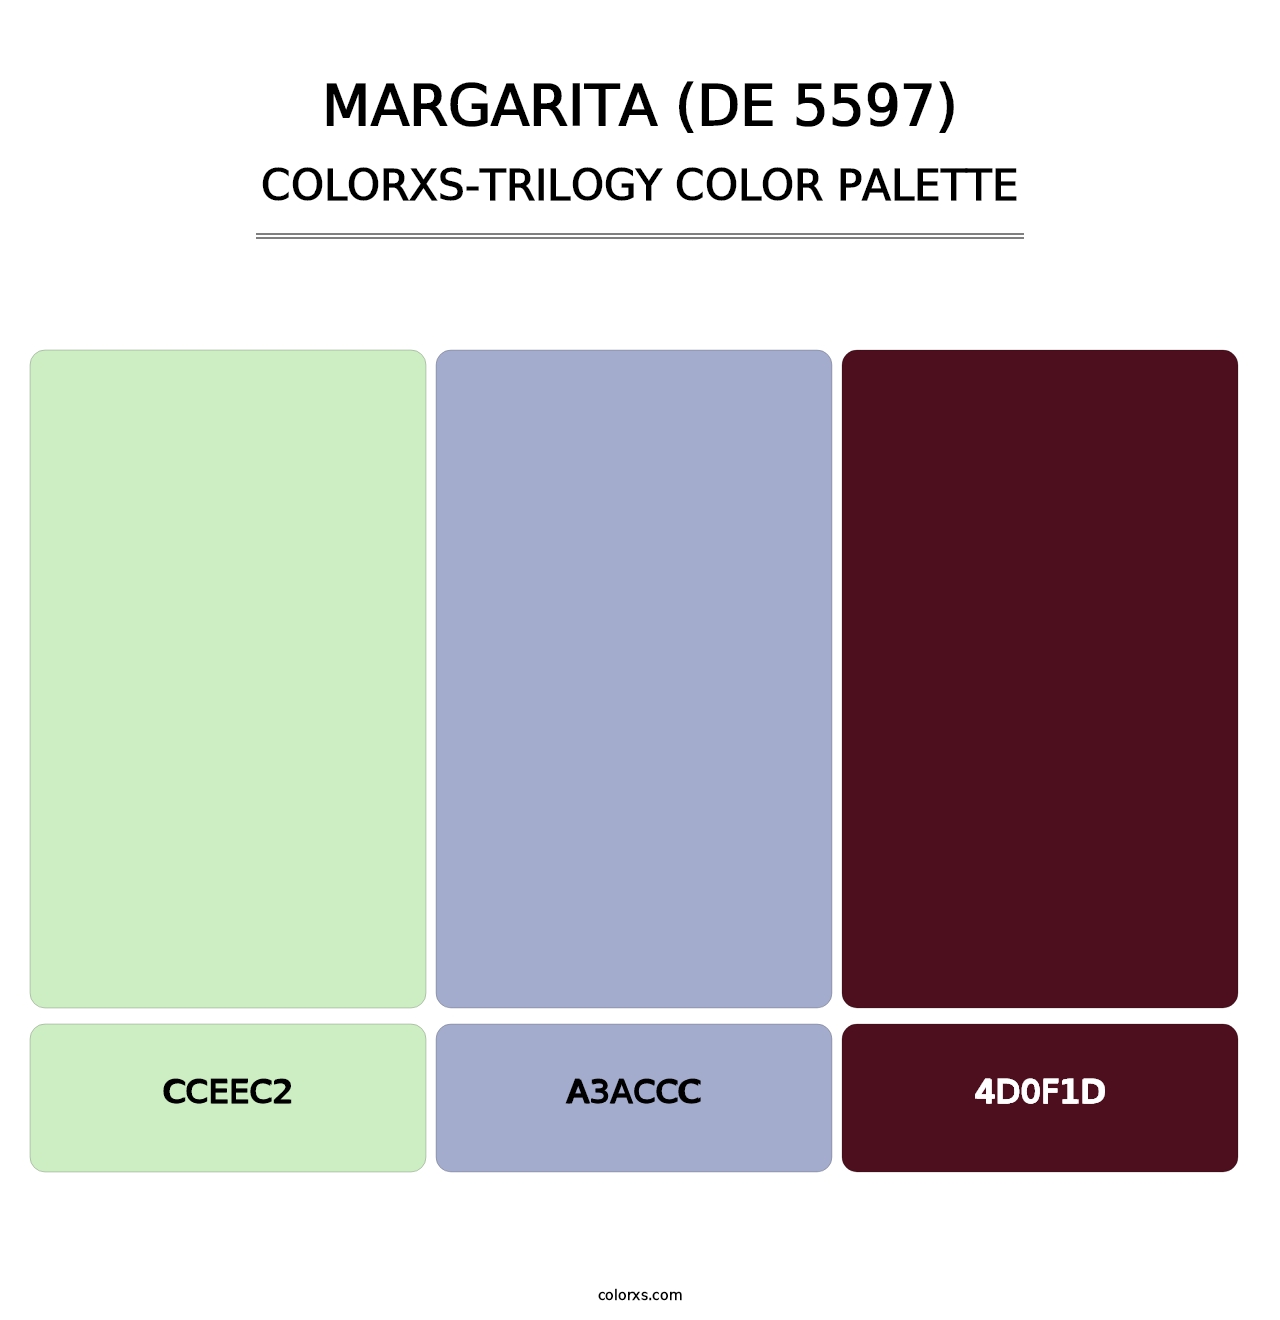 Margarita (DE 5597) - Colorxs Trilogy Palette